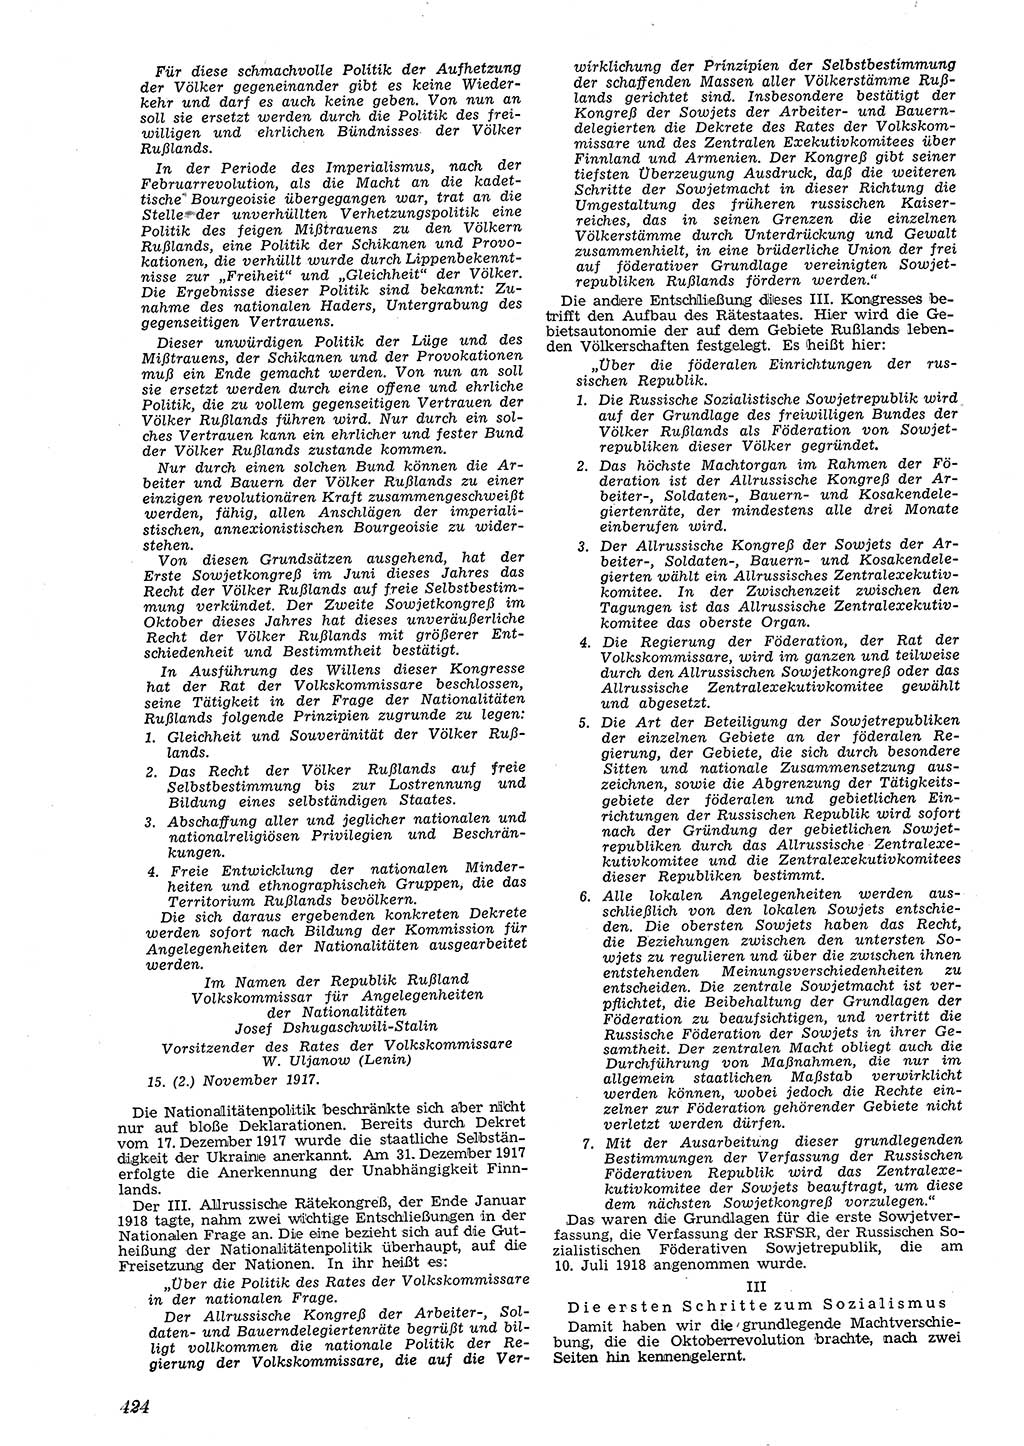 Neue Justiz (NJ), Zeitschrift für Recht und Rechtswissenschaft [Deutsche Demokratische Republik (DDR)], 4. Jahrgang 1950, Seite 424 (NJ DDR 1950, S. 424)